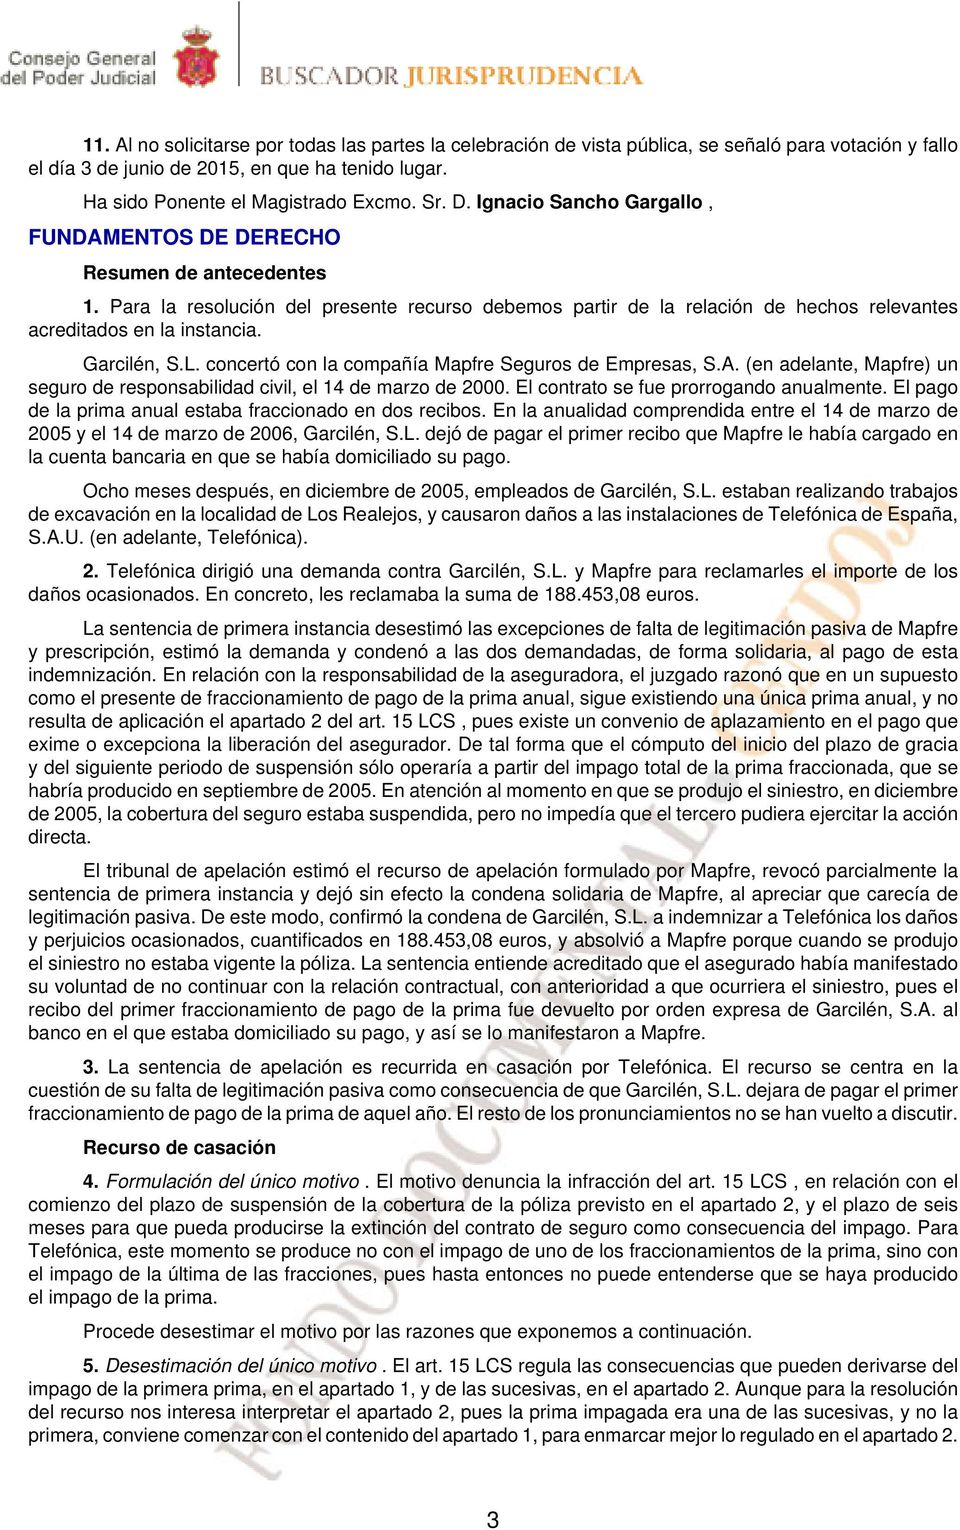 Garcilén, S.L. concertó con la compañía Mapfre Seguros de Empresas, S.A. (en adelante, Mapfre) un seguro de responsabilidad civil, el 14 de marzo de 2000. El contrato se fue prorrogando anualmente.